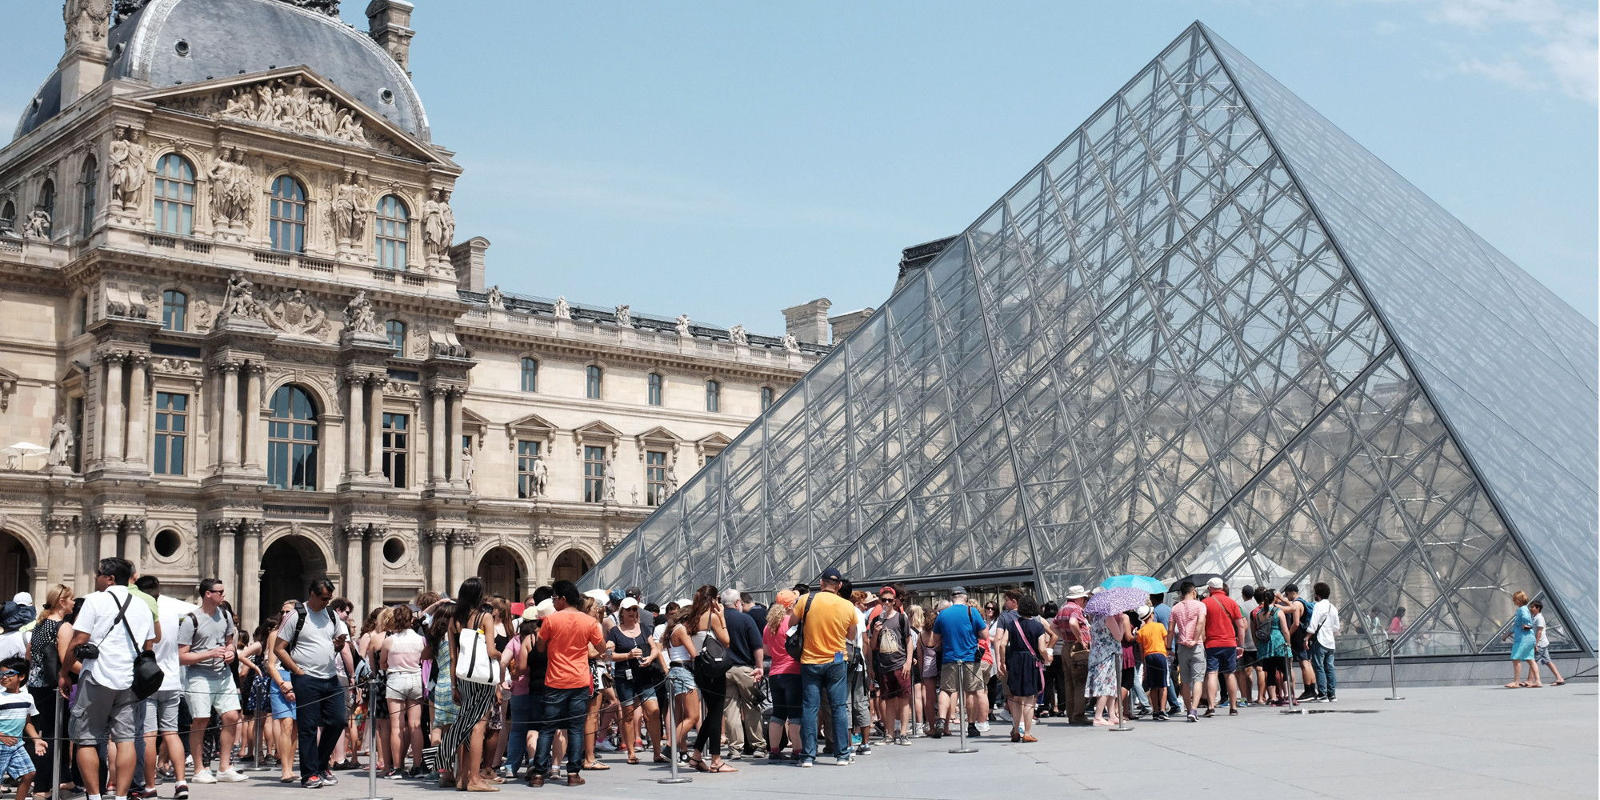 Частные экскурсии и гиды – это возможность попасть в Лувр или Колизей без очереди.